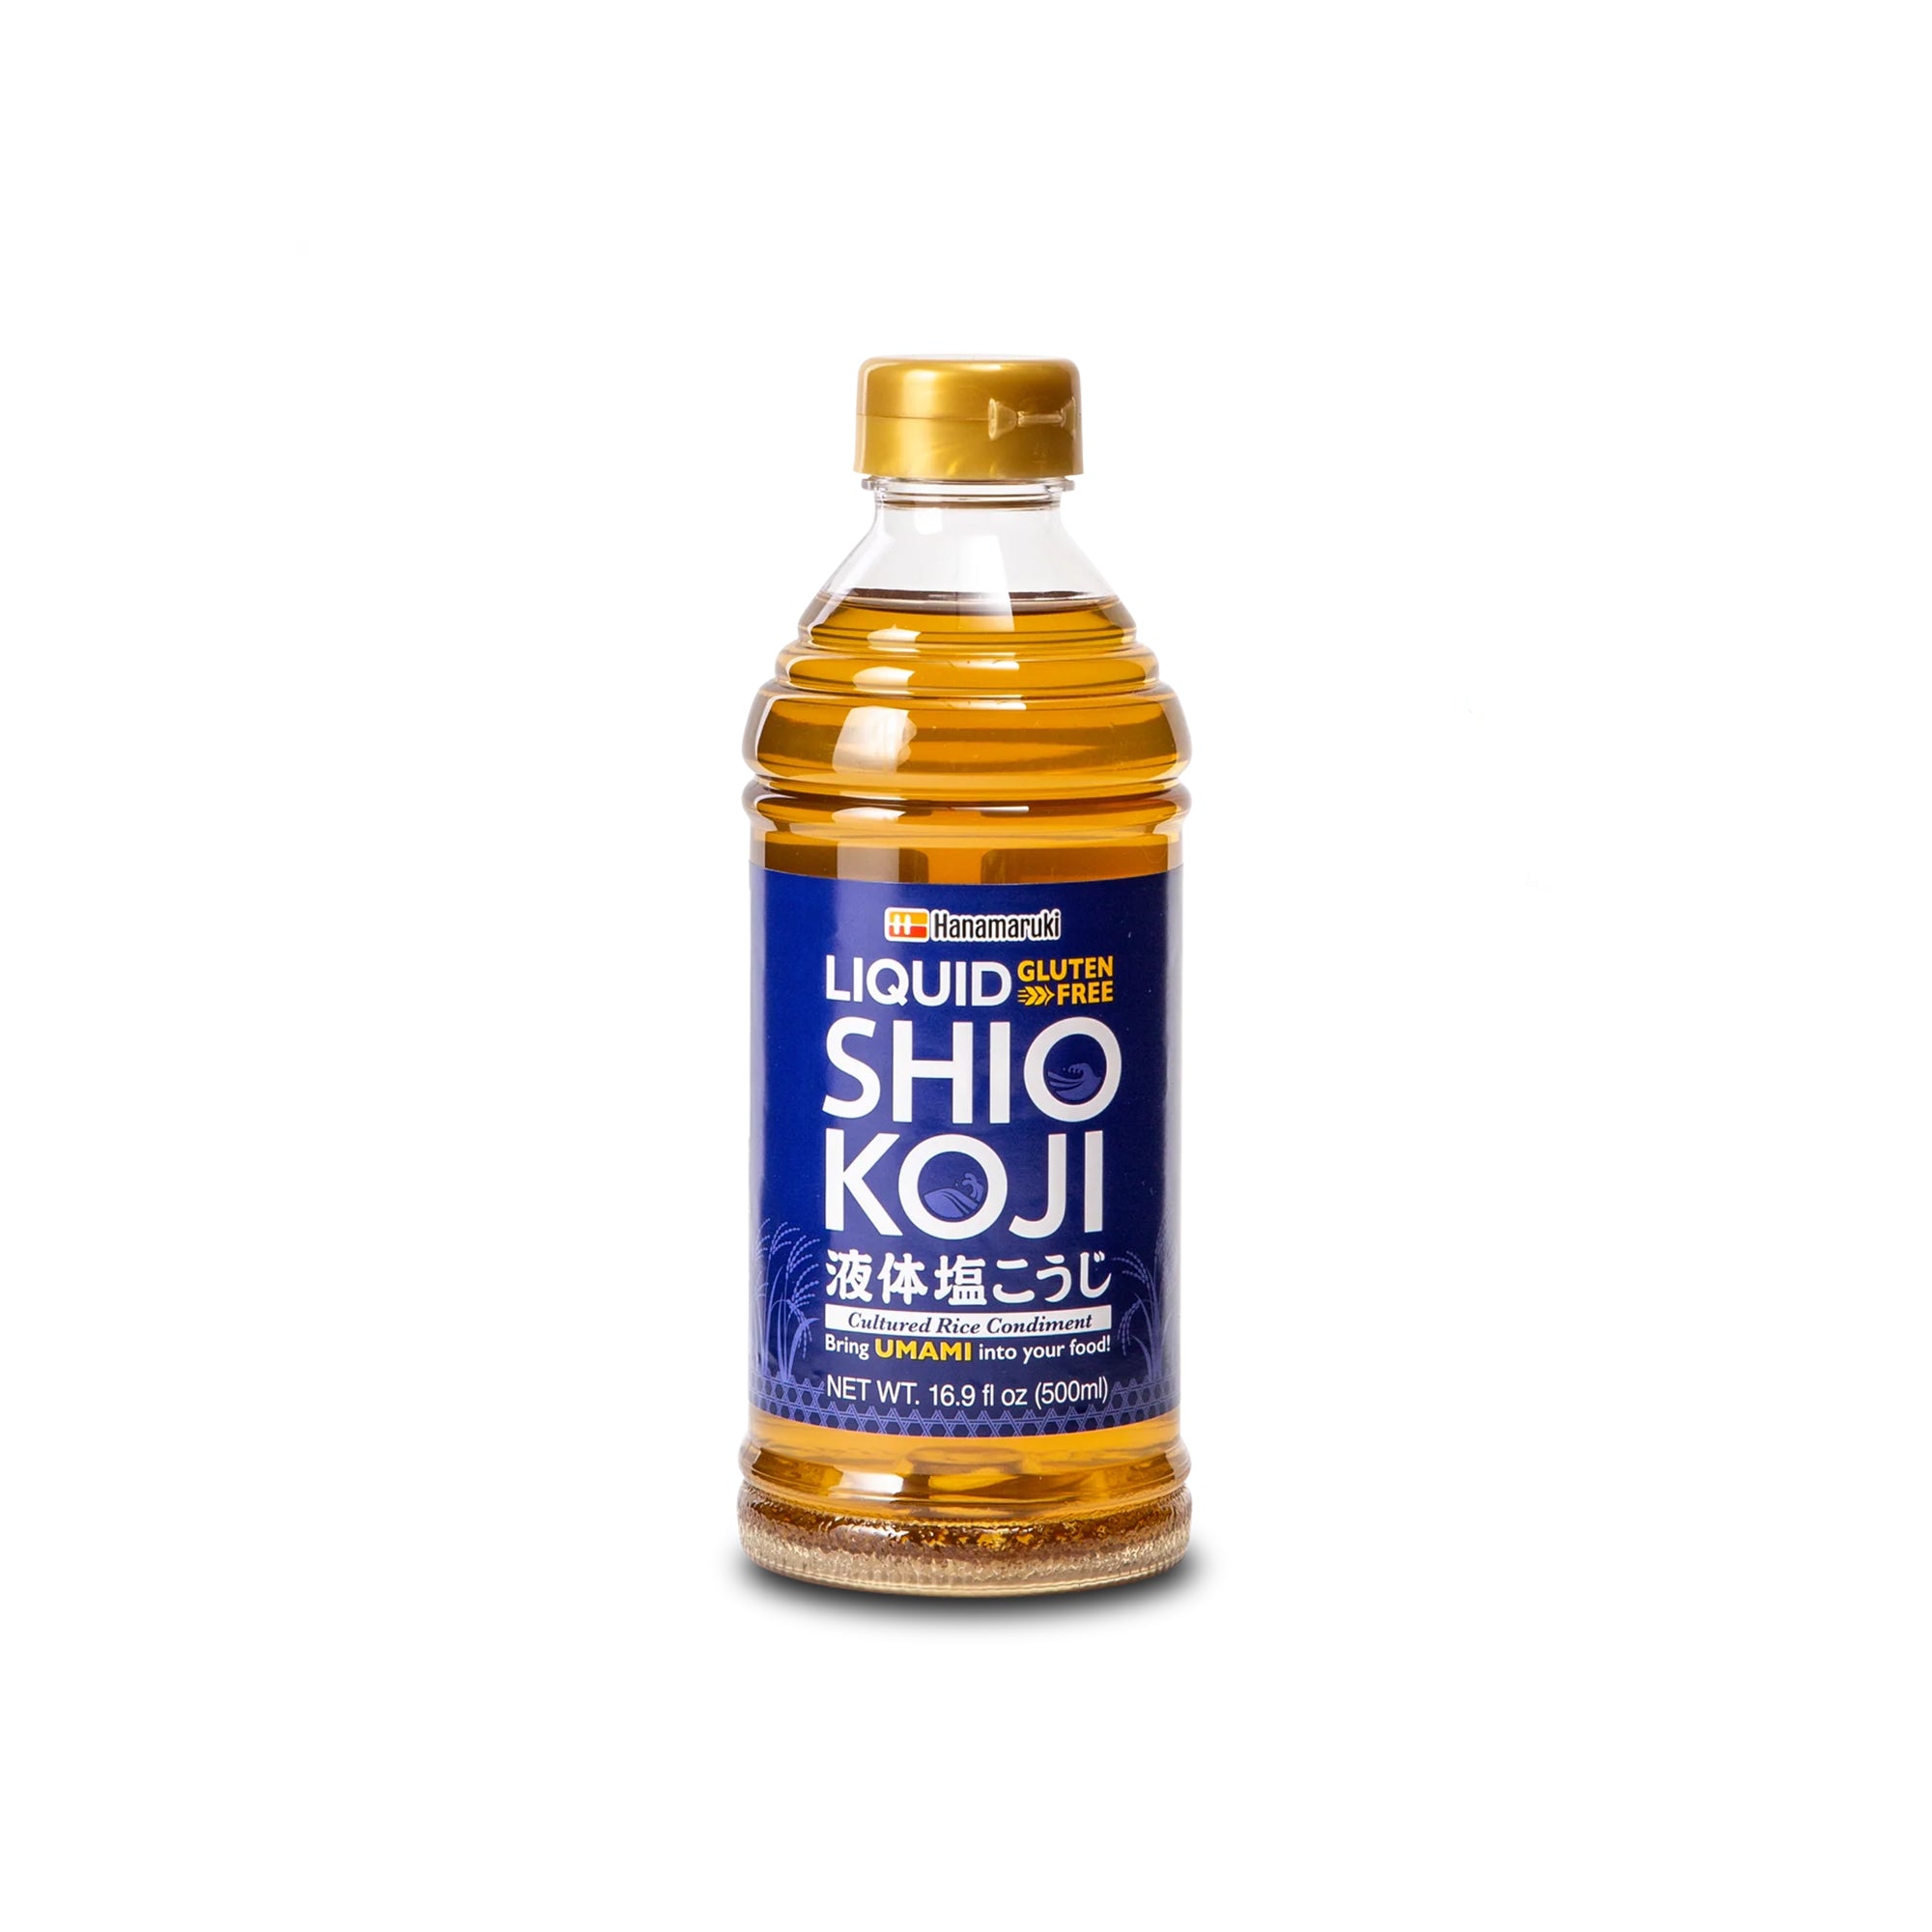 Liquid Shio Koji